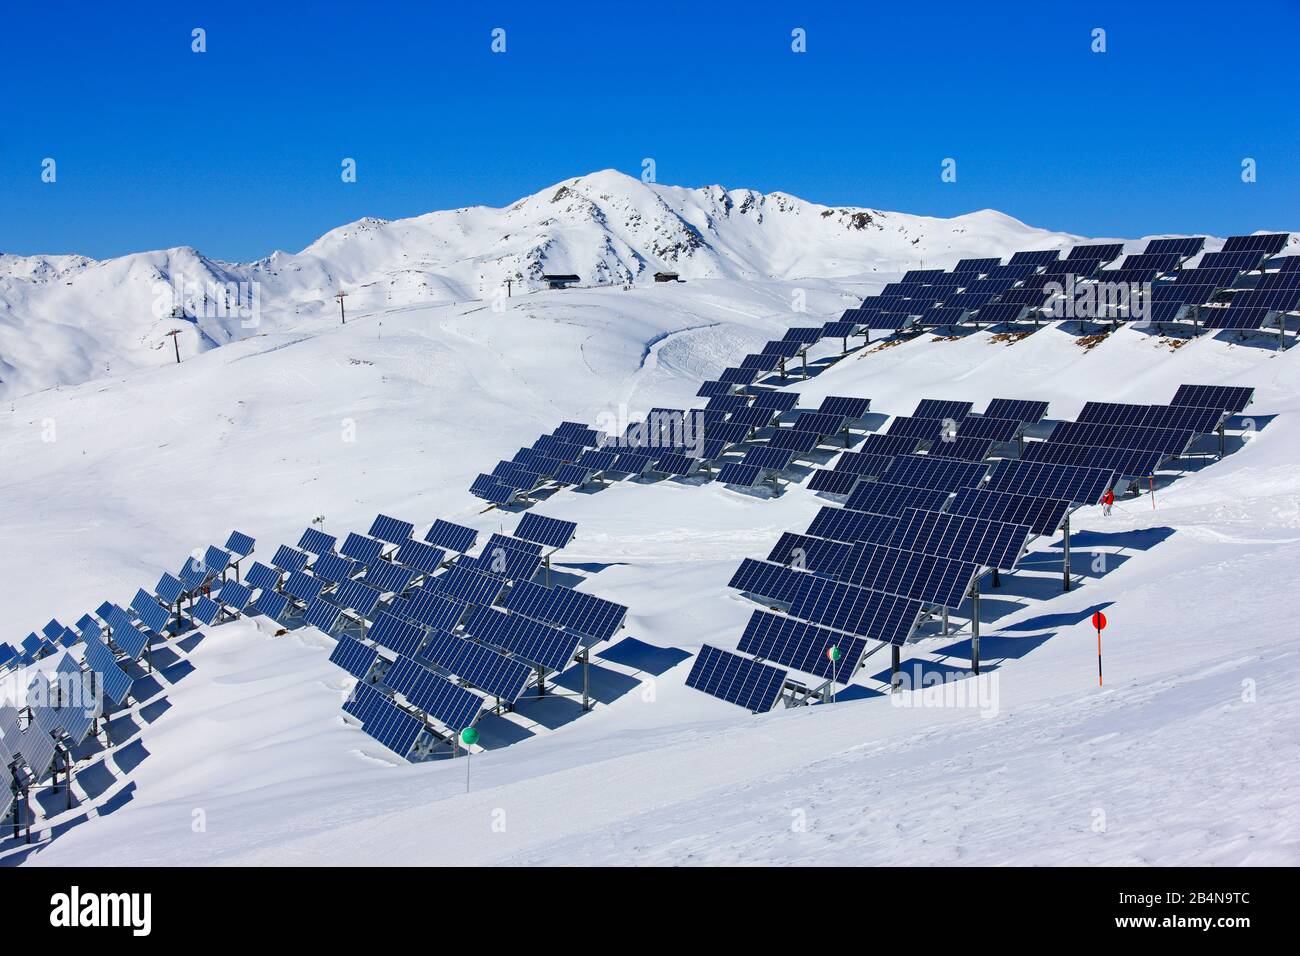 Impianto fotovoltaico nel Kitzbüheler Alpen sul Wildkogel a 2200 m, inverno, conversione di energia solare in energia elettrica utilizzando celle fotovoltaiche, Foto Stock